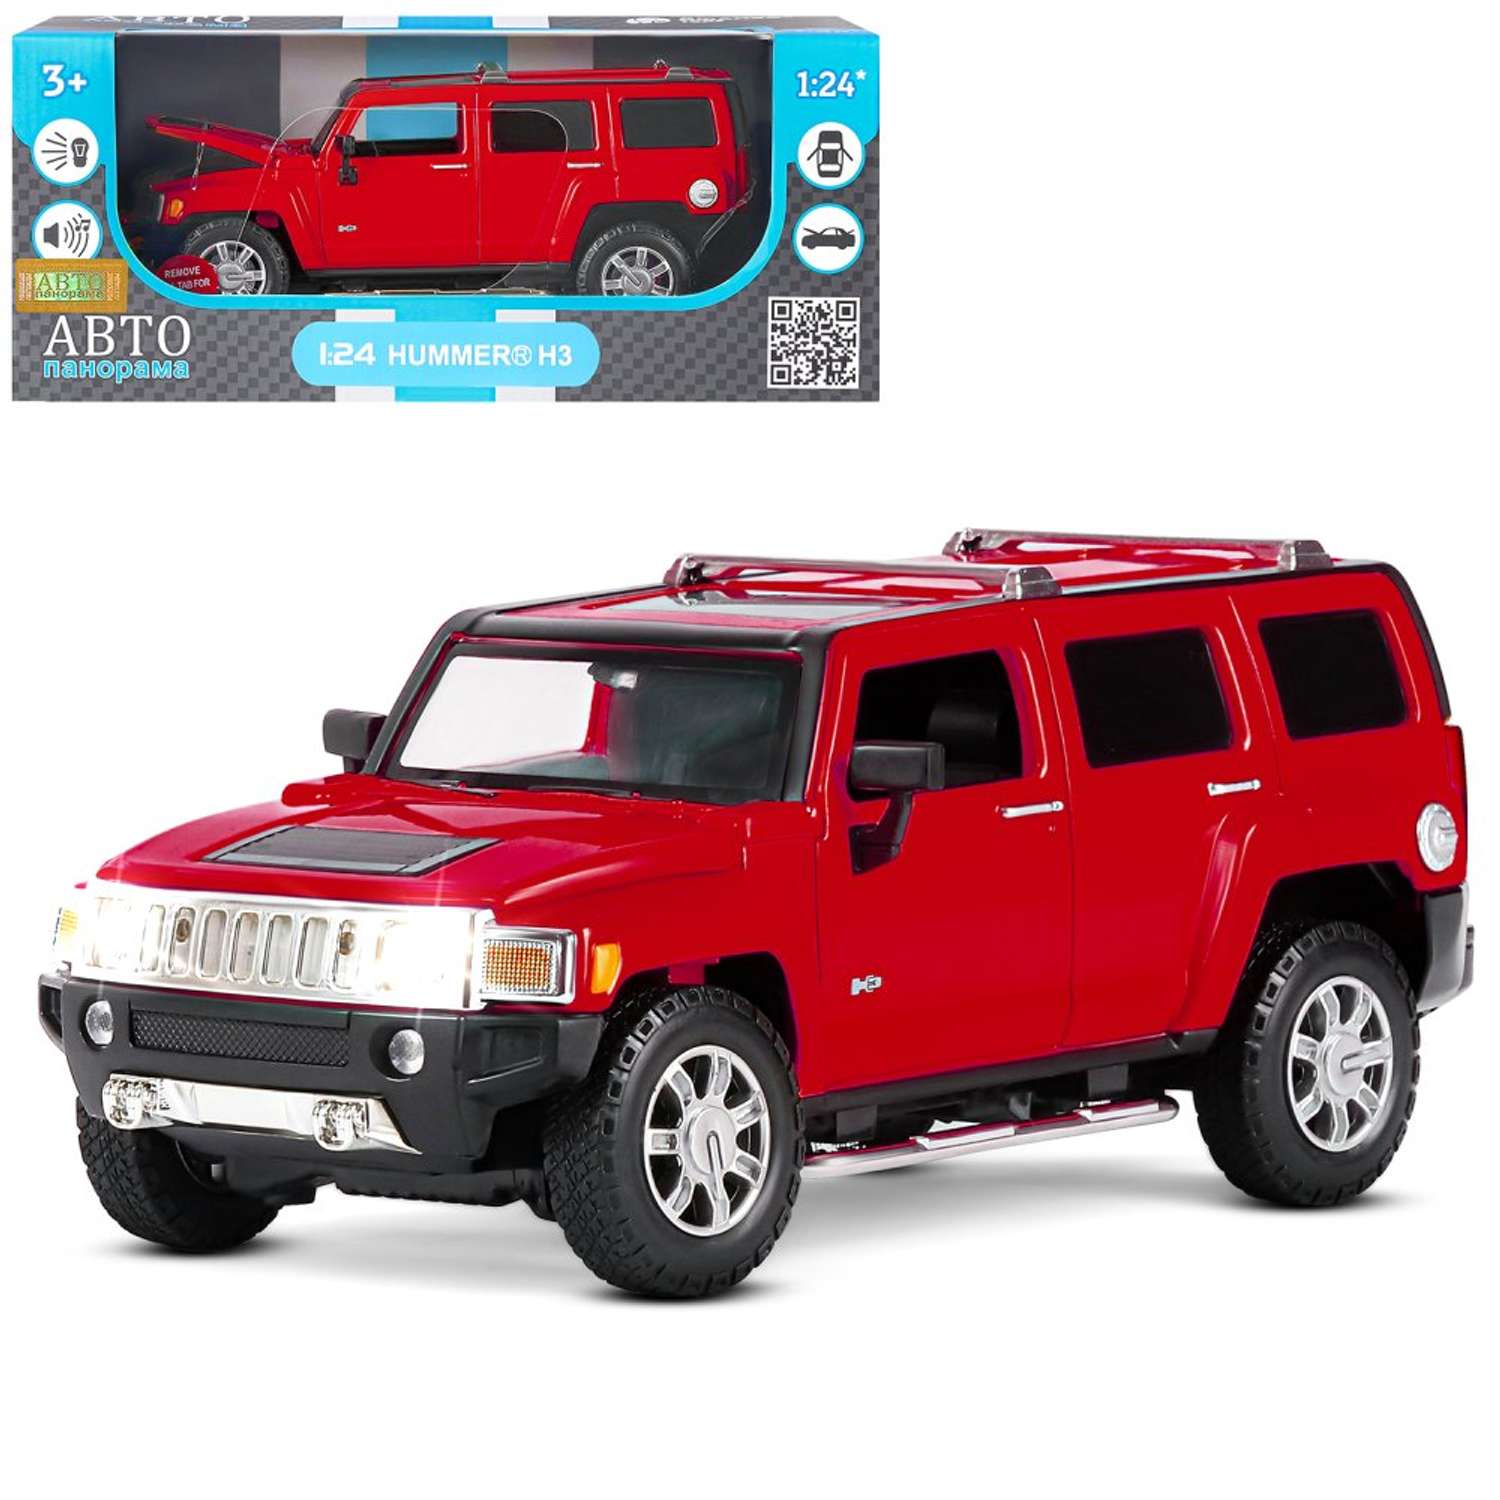 Машинка металлическая АВТОпанорама игрушка детская Hummer H3 1:24 красный JB1200221 - фото 11